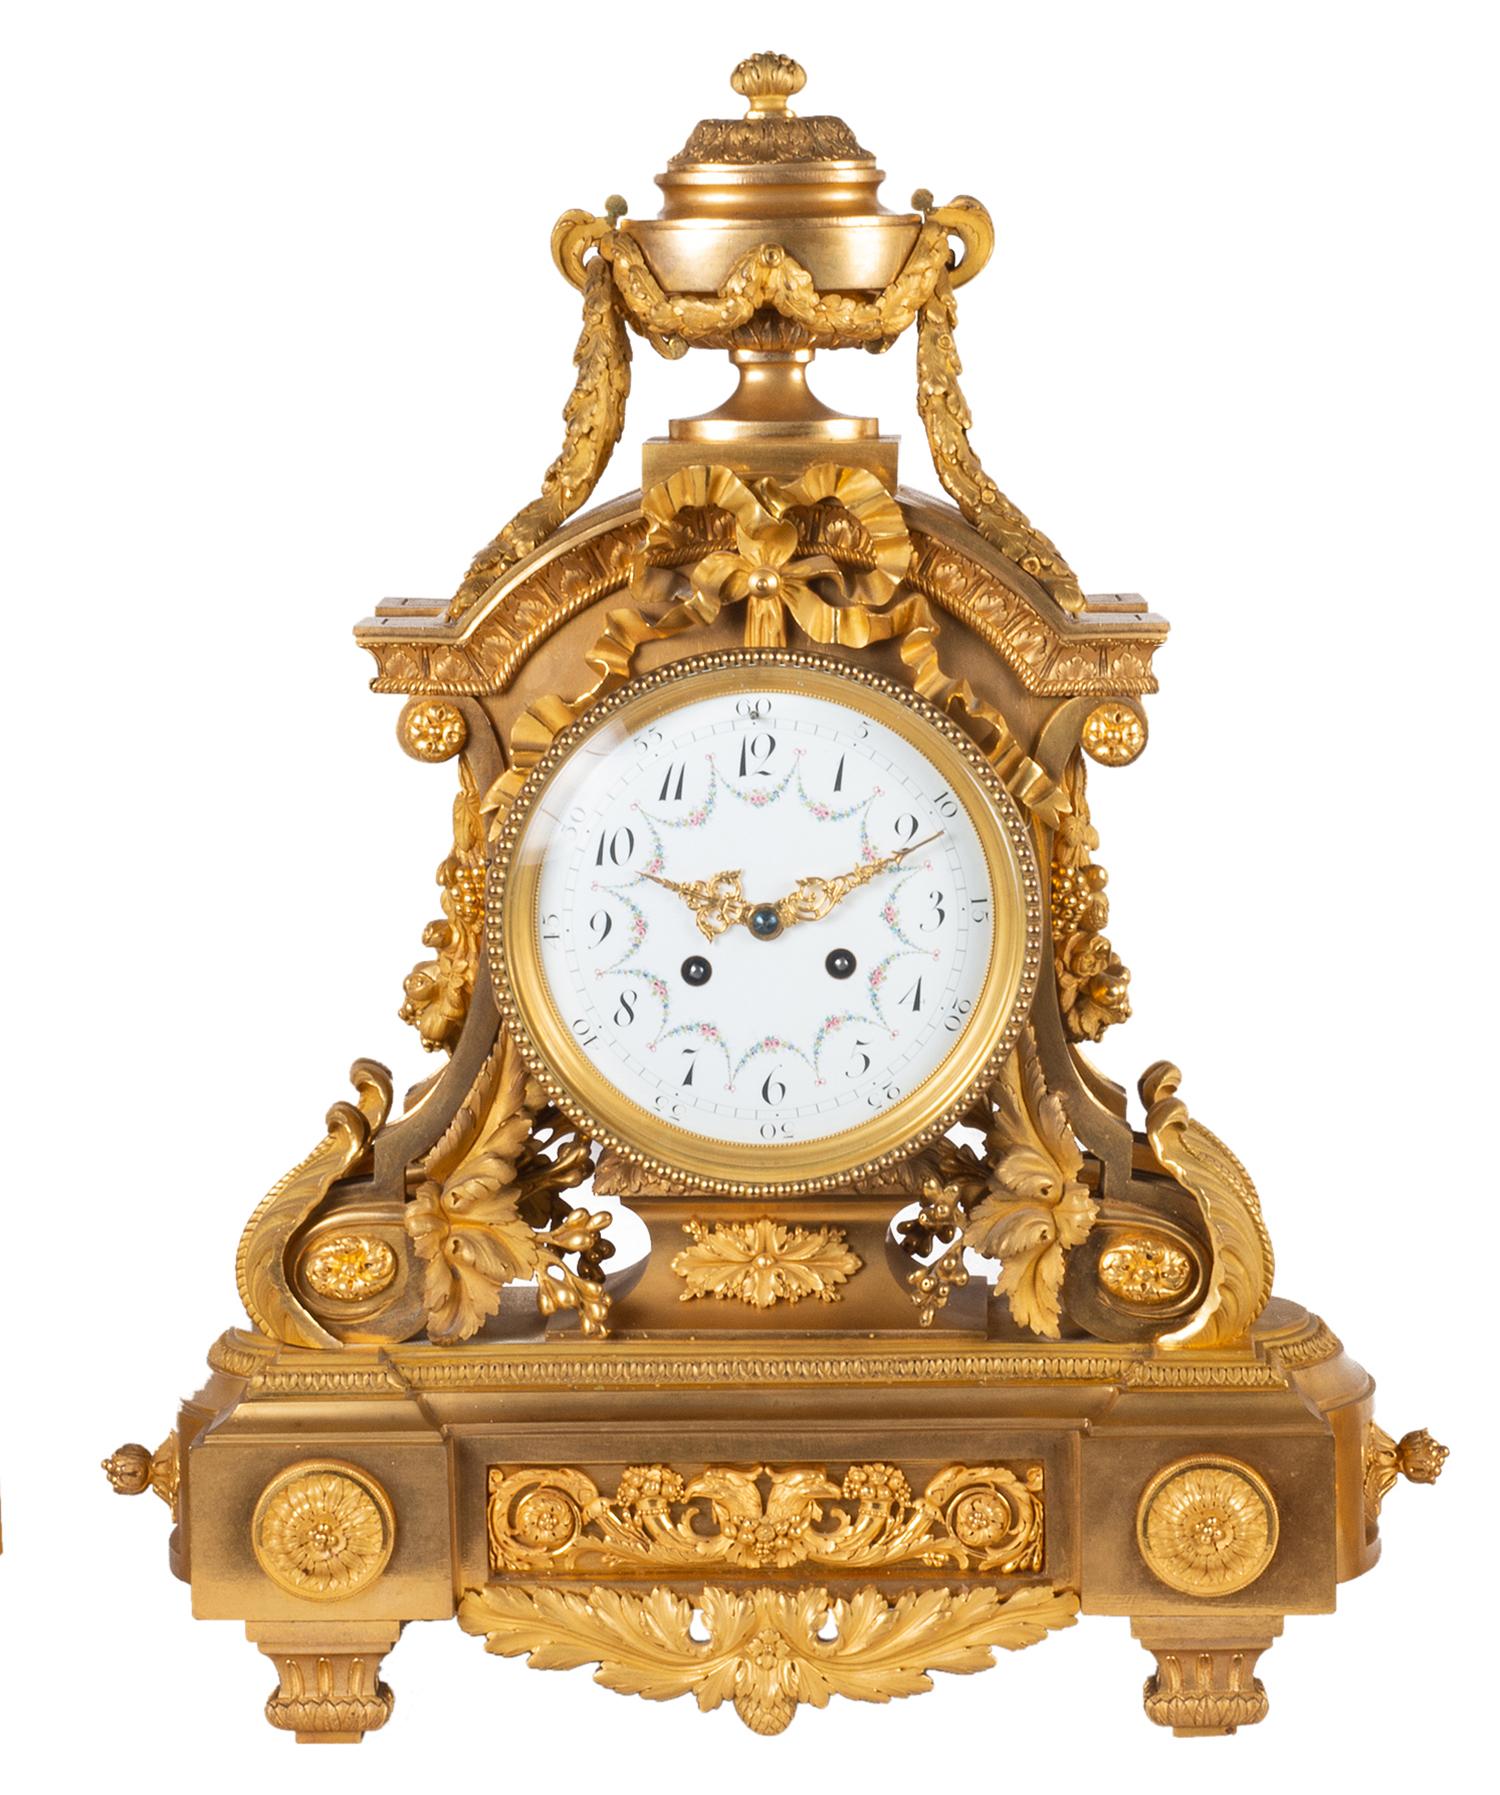 Une très belle garniture d'horloge de style Louis XVI du 19ème siècle en bronze doré, l'horloge ayant un fleuron en forme d'urne classique avec des guirlandes, des rubans et une décoration feuillagée. Le cadran de l'horloge en émail blanc avec des